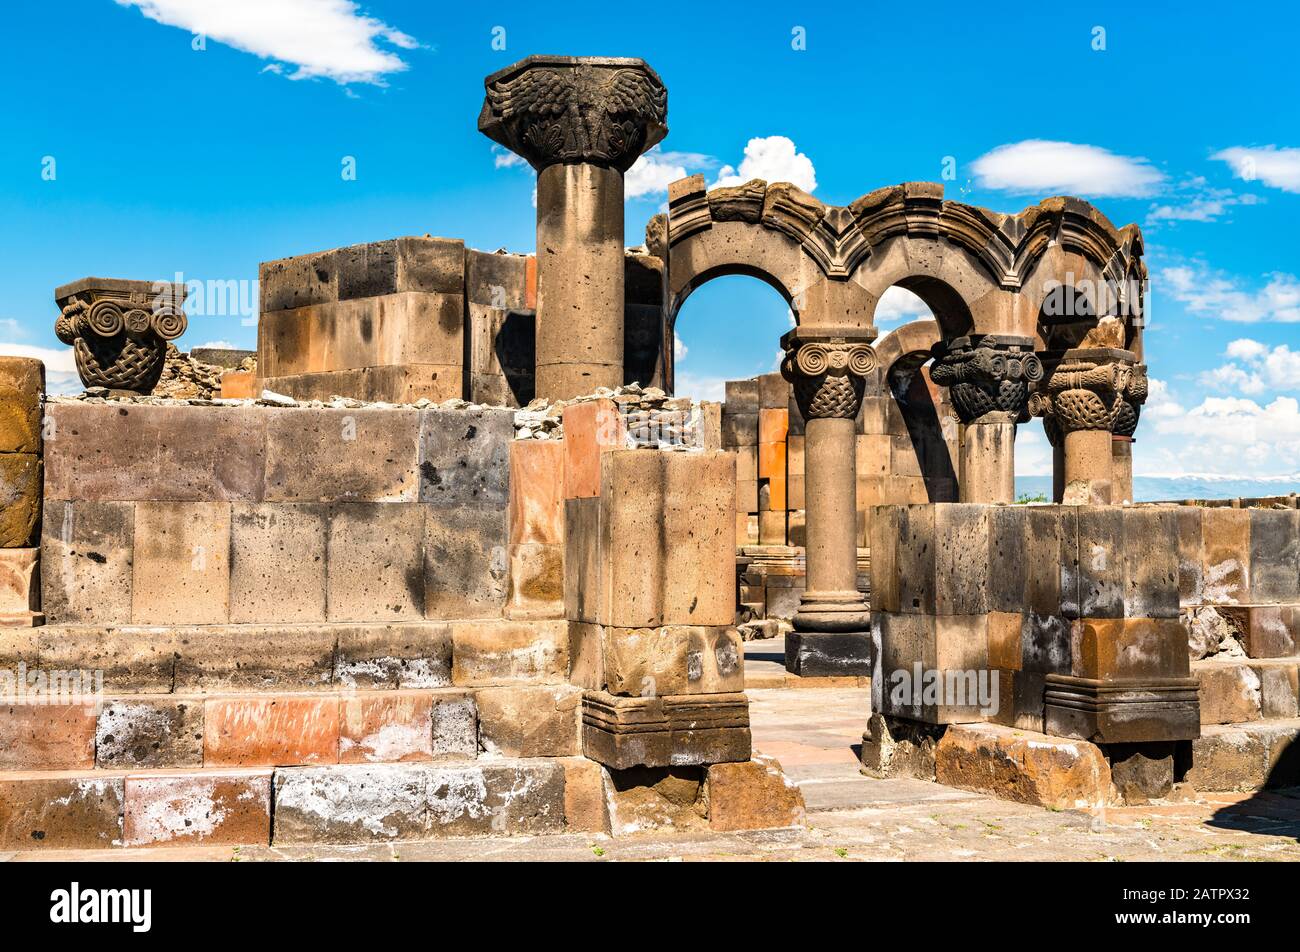 Zvartnots Cathedral in Armenia Stock Photo